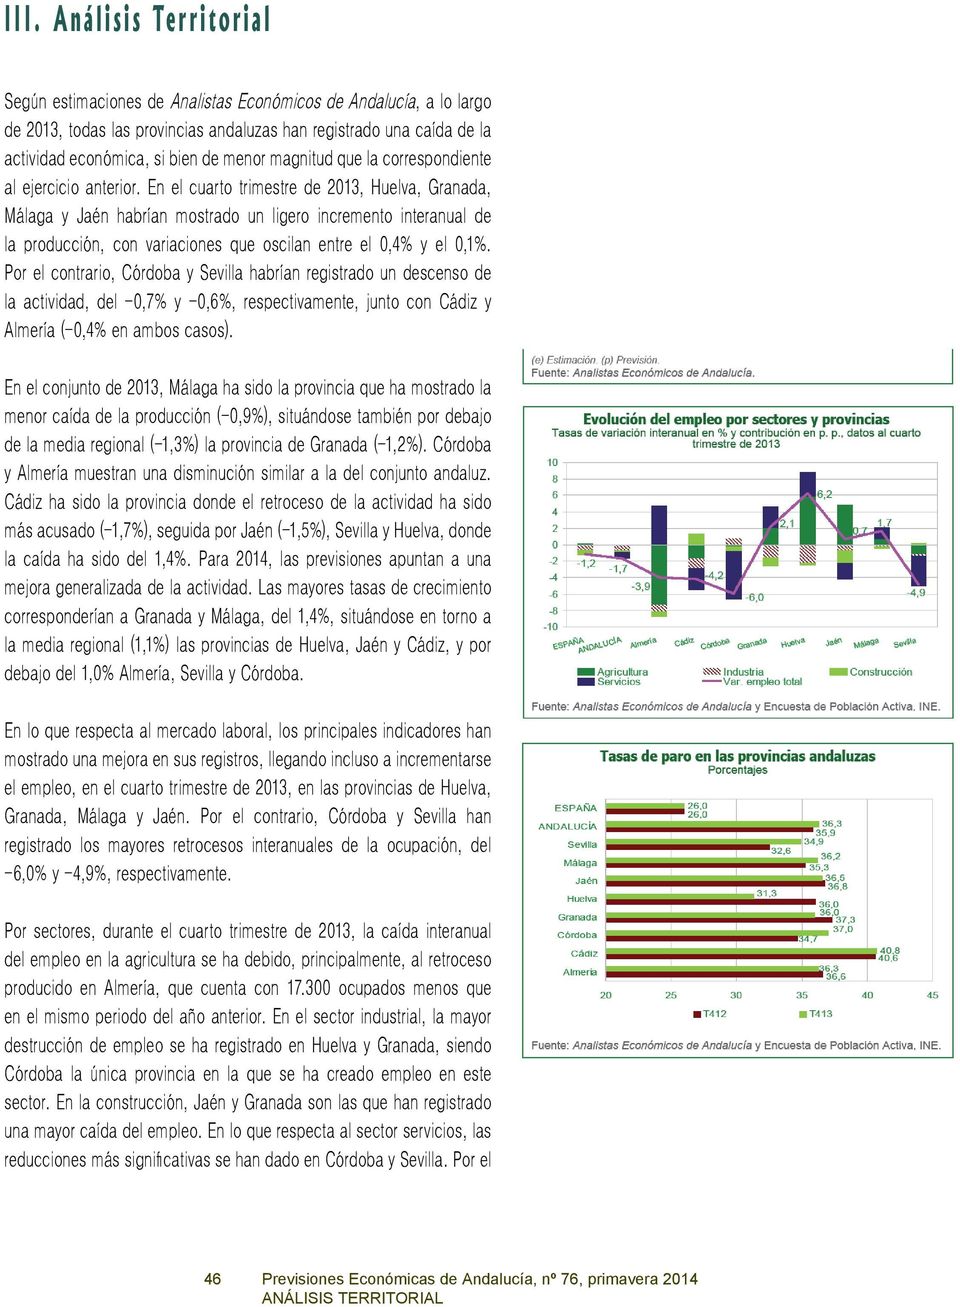 En el cuarto trimestre de 2013, Huelva, Granada, Málaga y Jaén habrían mostrado un ligero incremento interanual de la producción, con variaciones que oscilan entre el 0,4% y el 0,1%.